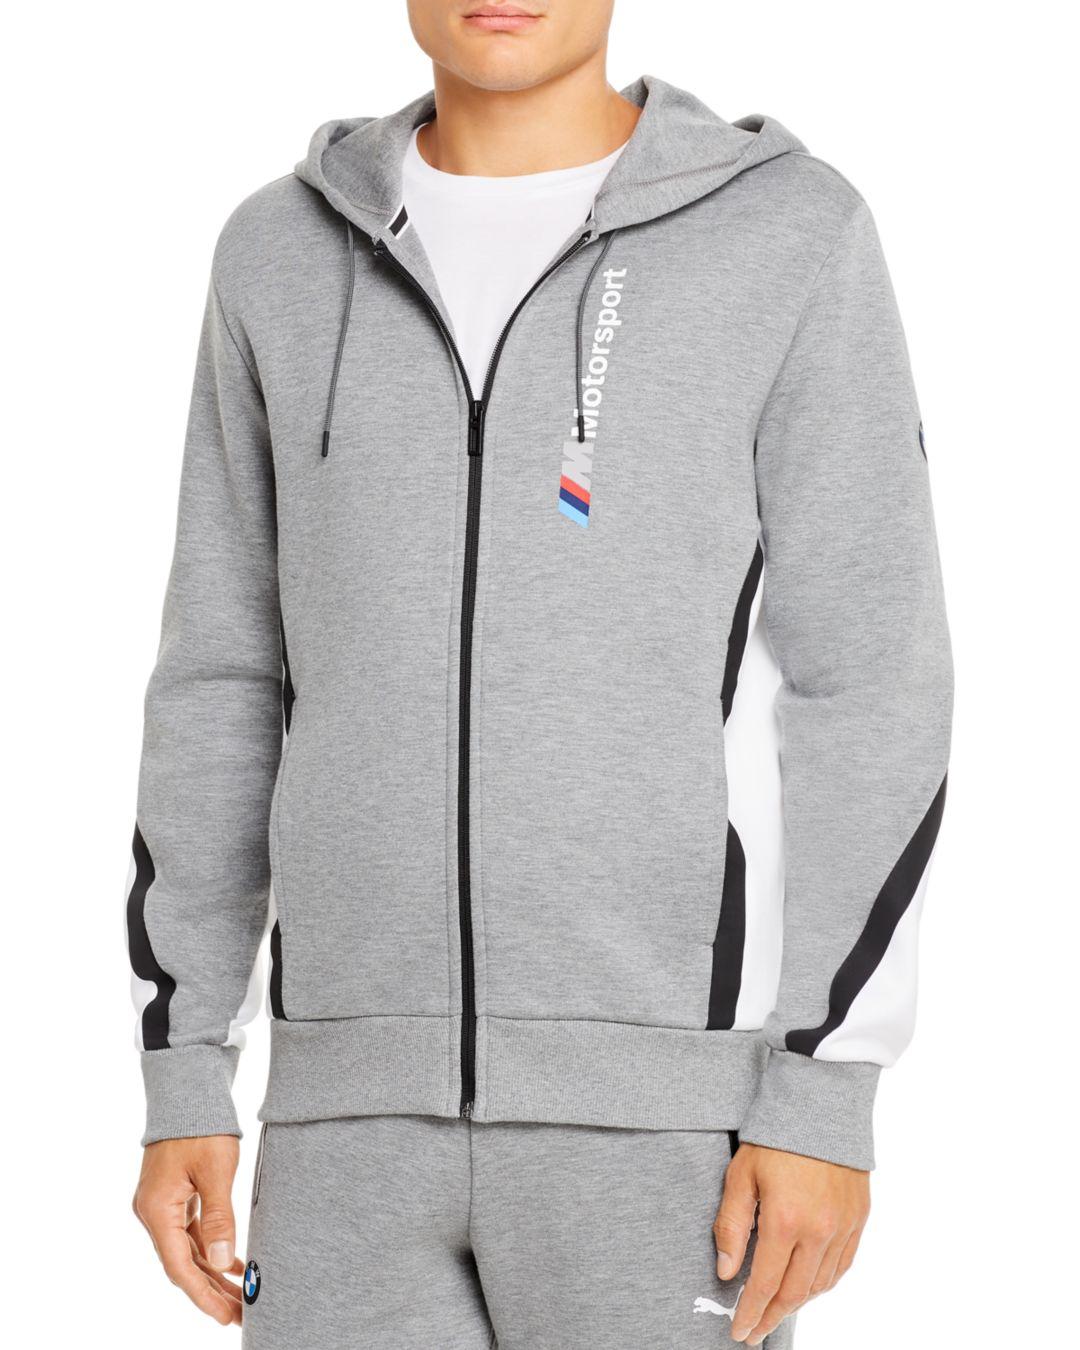 puma bmw hoodie grey